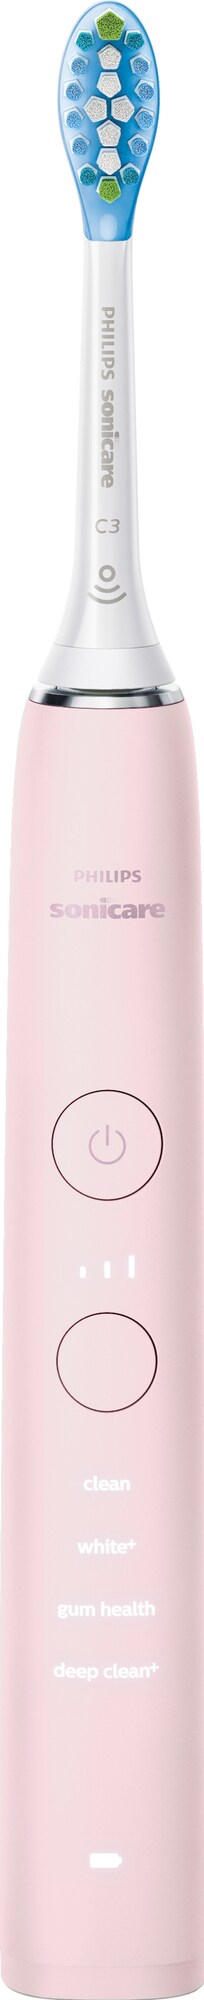 Philips Sonicare DiamondClean elektrisk tannbørste HX991129V2 (rosa) -  Tannpleie - Elkjøp